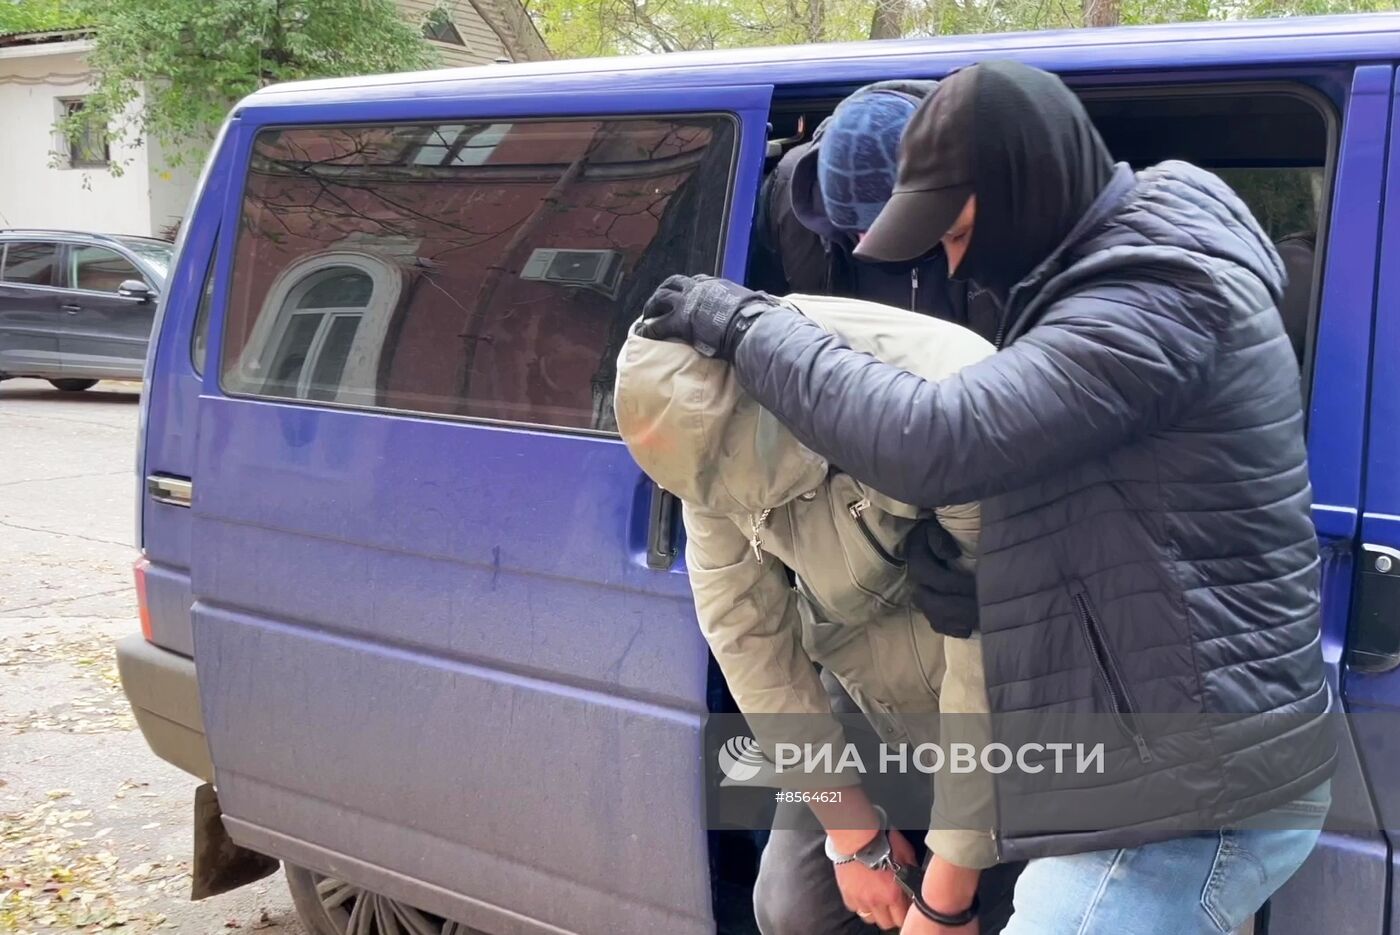 ФСБ РФ задержала гражданина РФ по подозрению в госизмене 